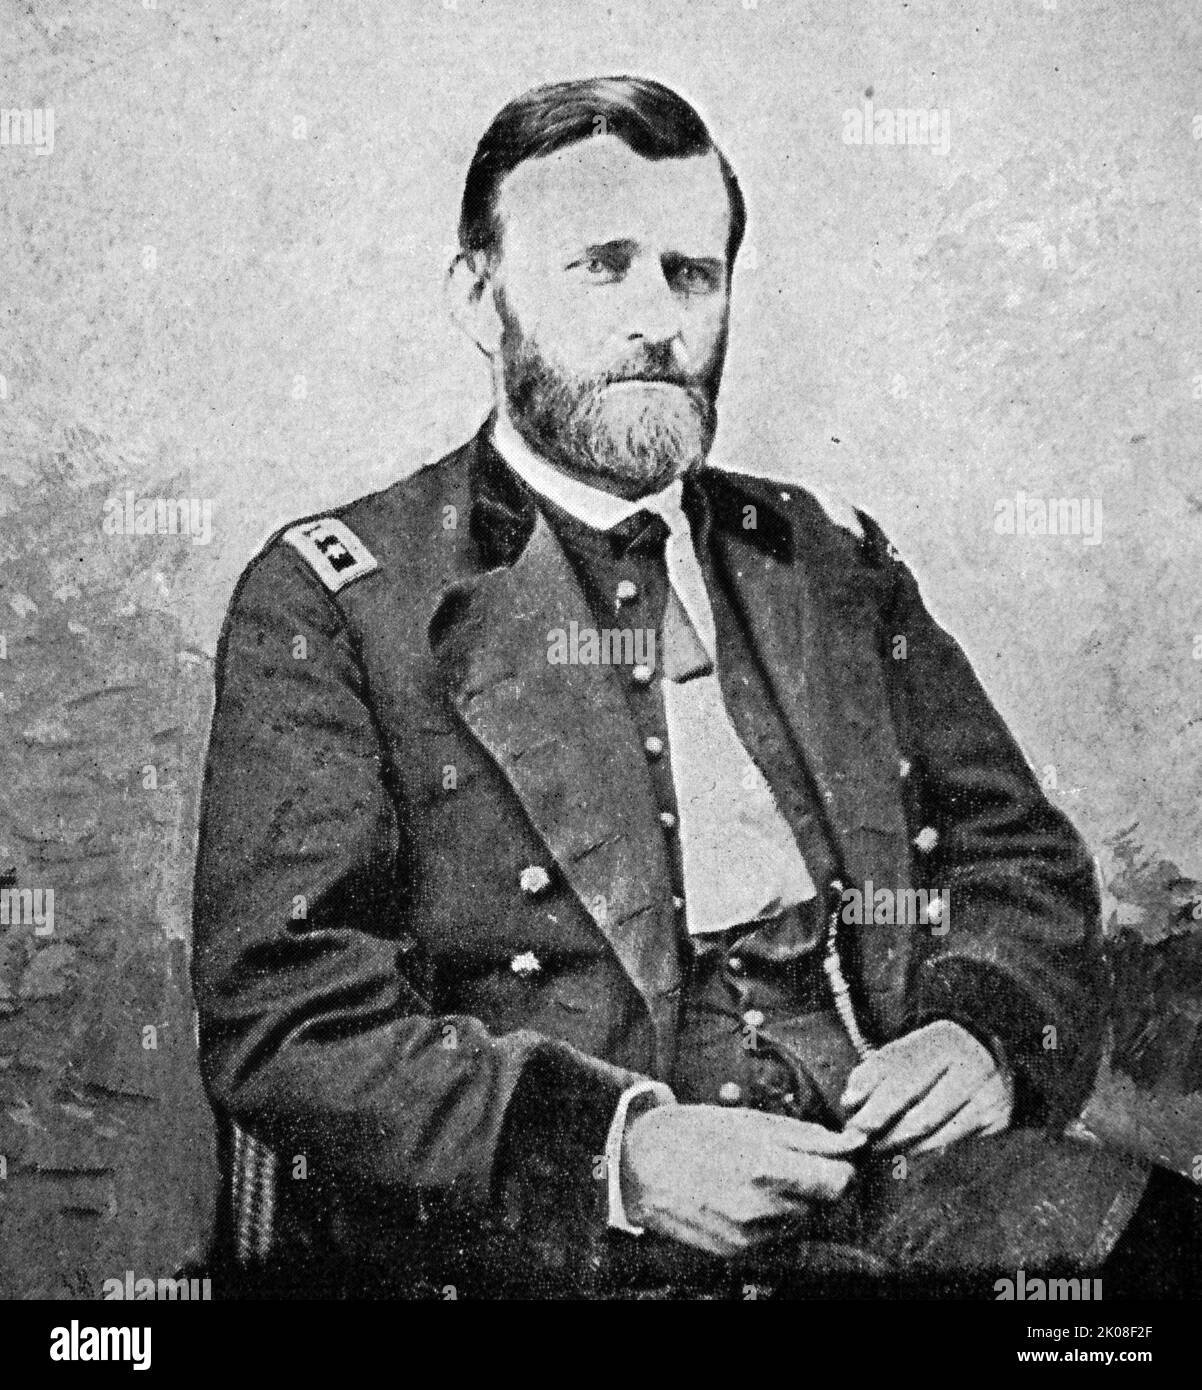 El General Ulysses S. Grant (nacido Hiram Ulysses Grant; 27 de abril de 1822 - 23 de julio de 1885) fue un oficial militar y político estadounidense que sirvió como 18th presidente de los Estados Unidos de 1869 a 1877. Como Comandante General, dirigió al Ejército de la Unión a la victoria en la Guerra Civil Americana en 1865 y posteriormente sirvió brevemente como Secretario de Guerra Foto de stock